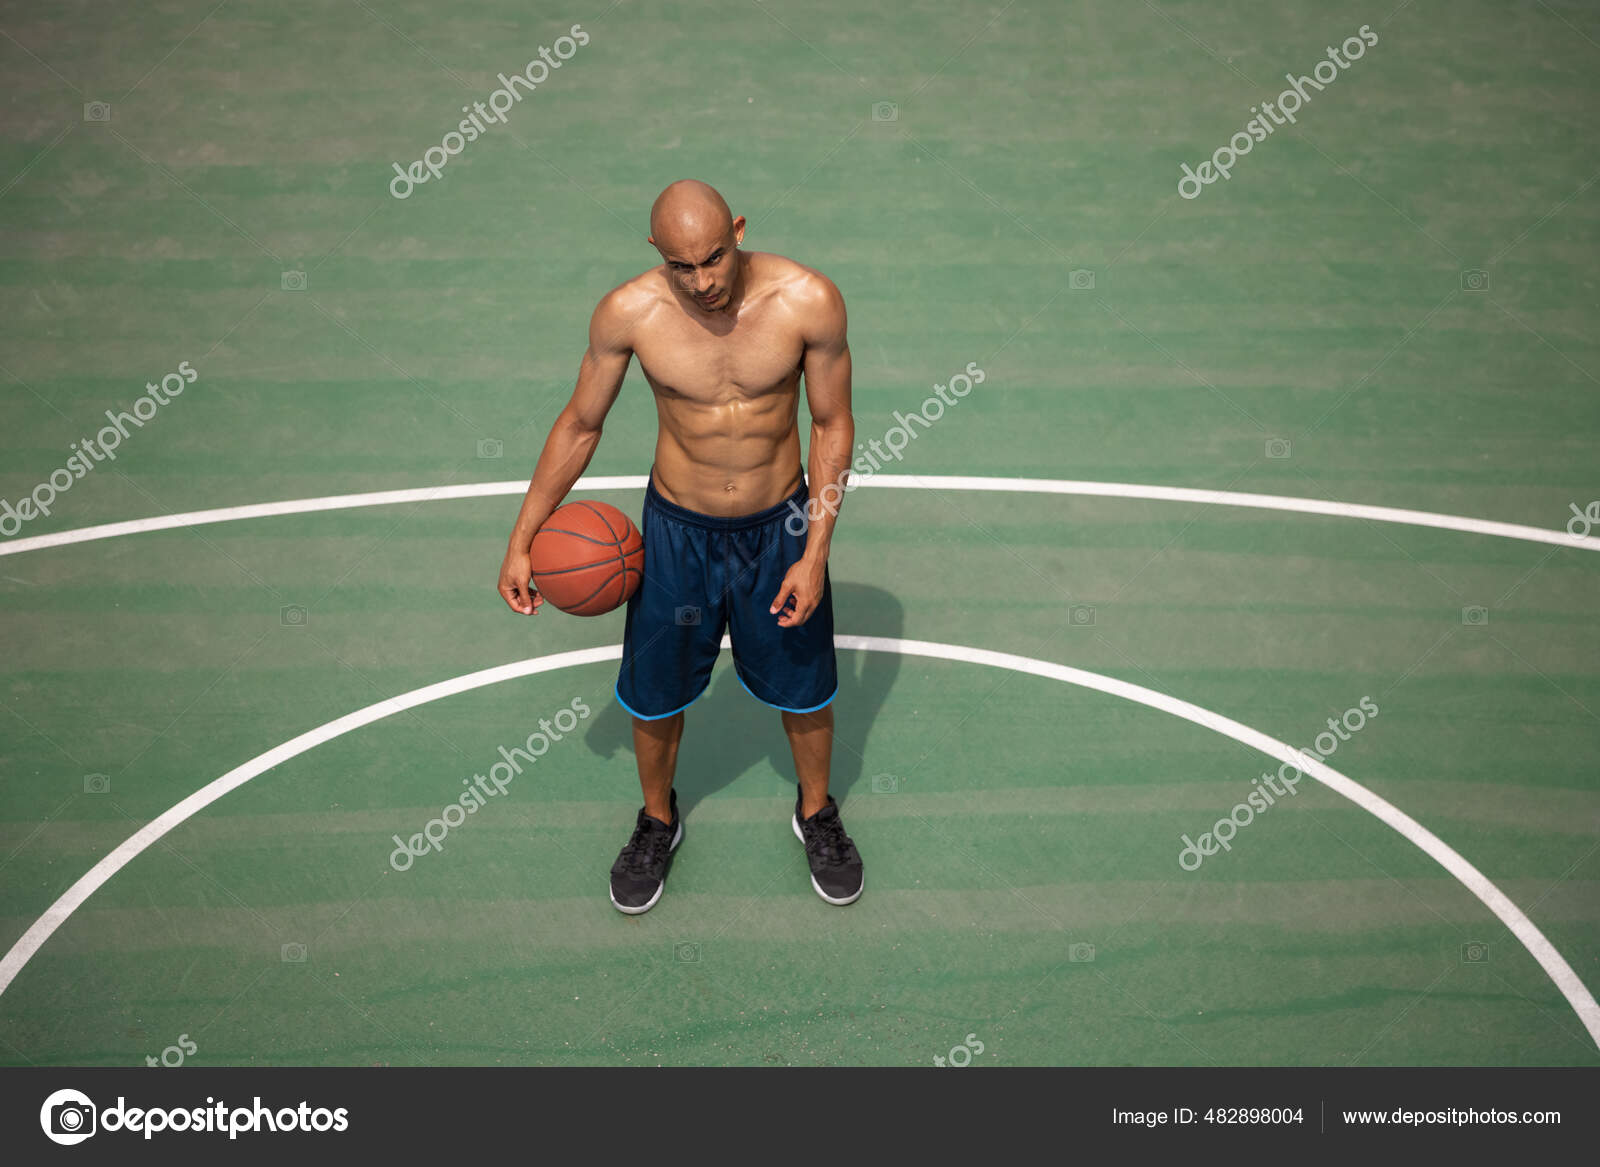 Basketball Stars - Jogo Online - Joga Agora